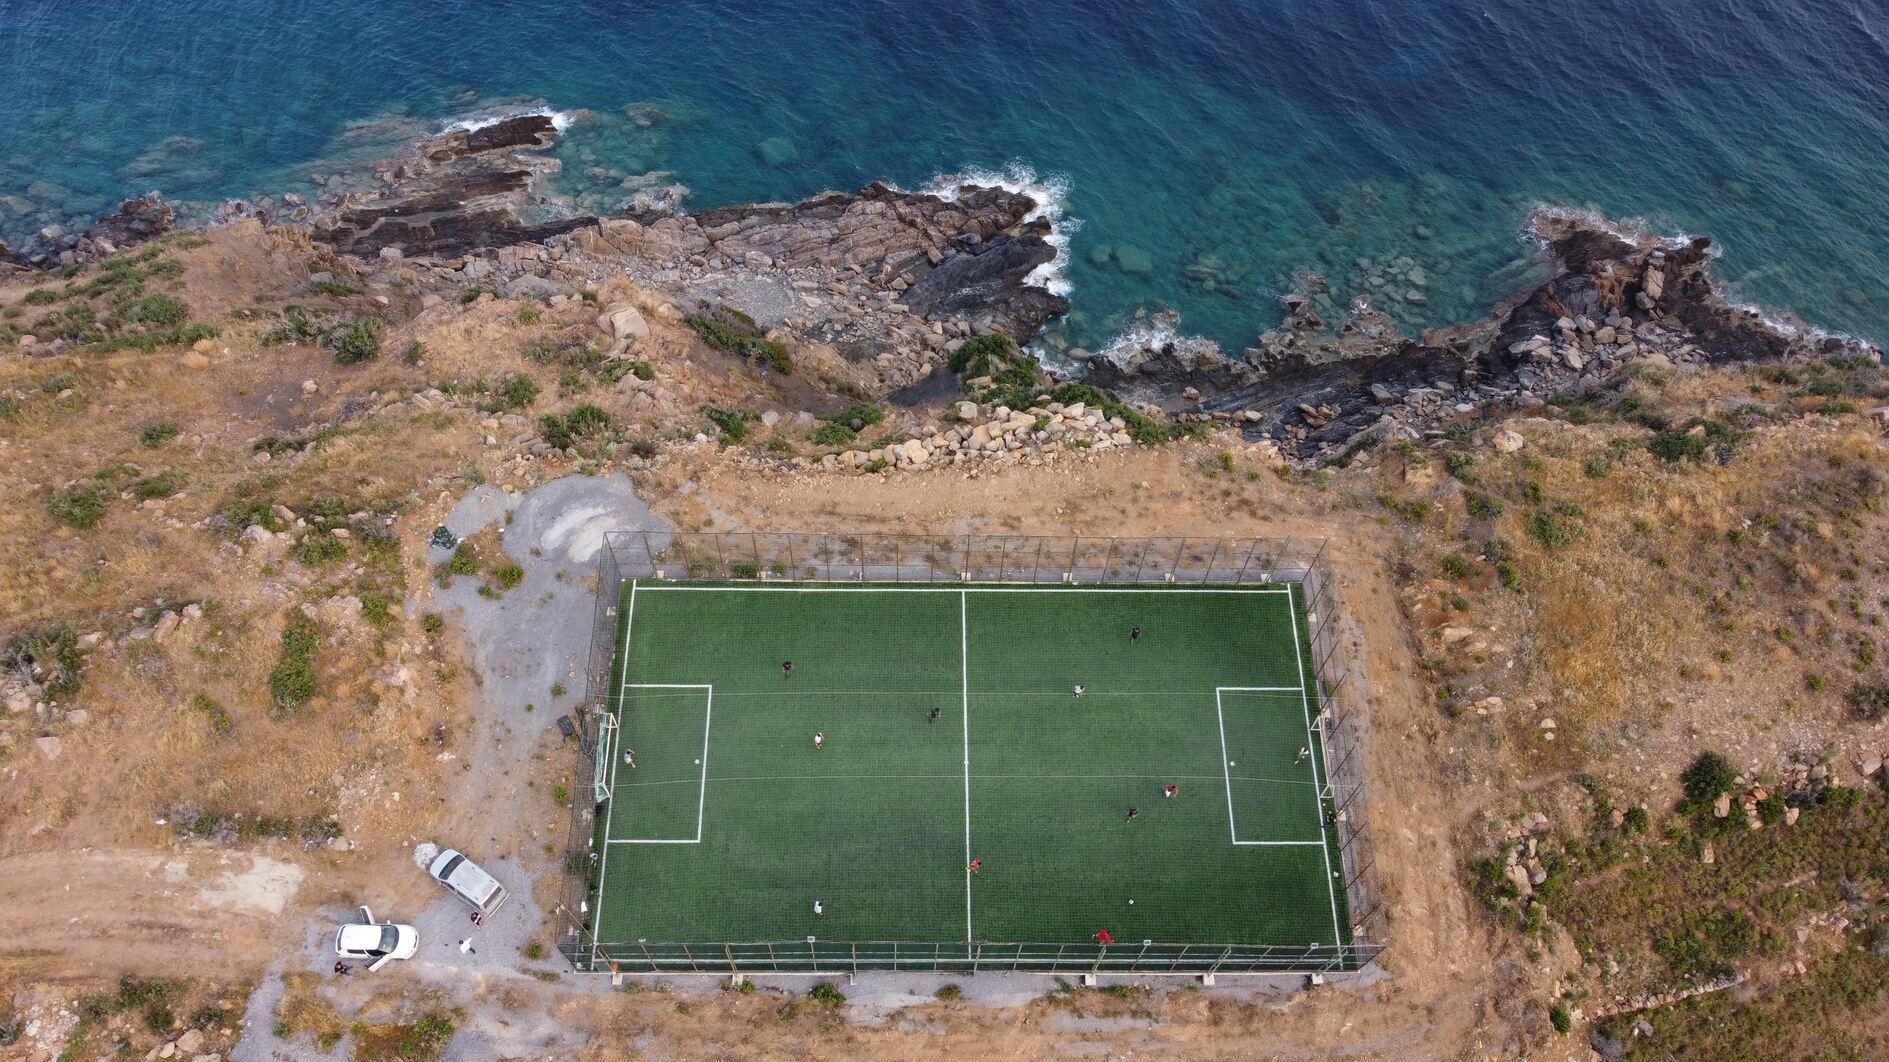 Het voetbalveld van Mersin biedt een prachtig decor voor amateurwedstrijden